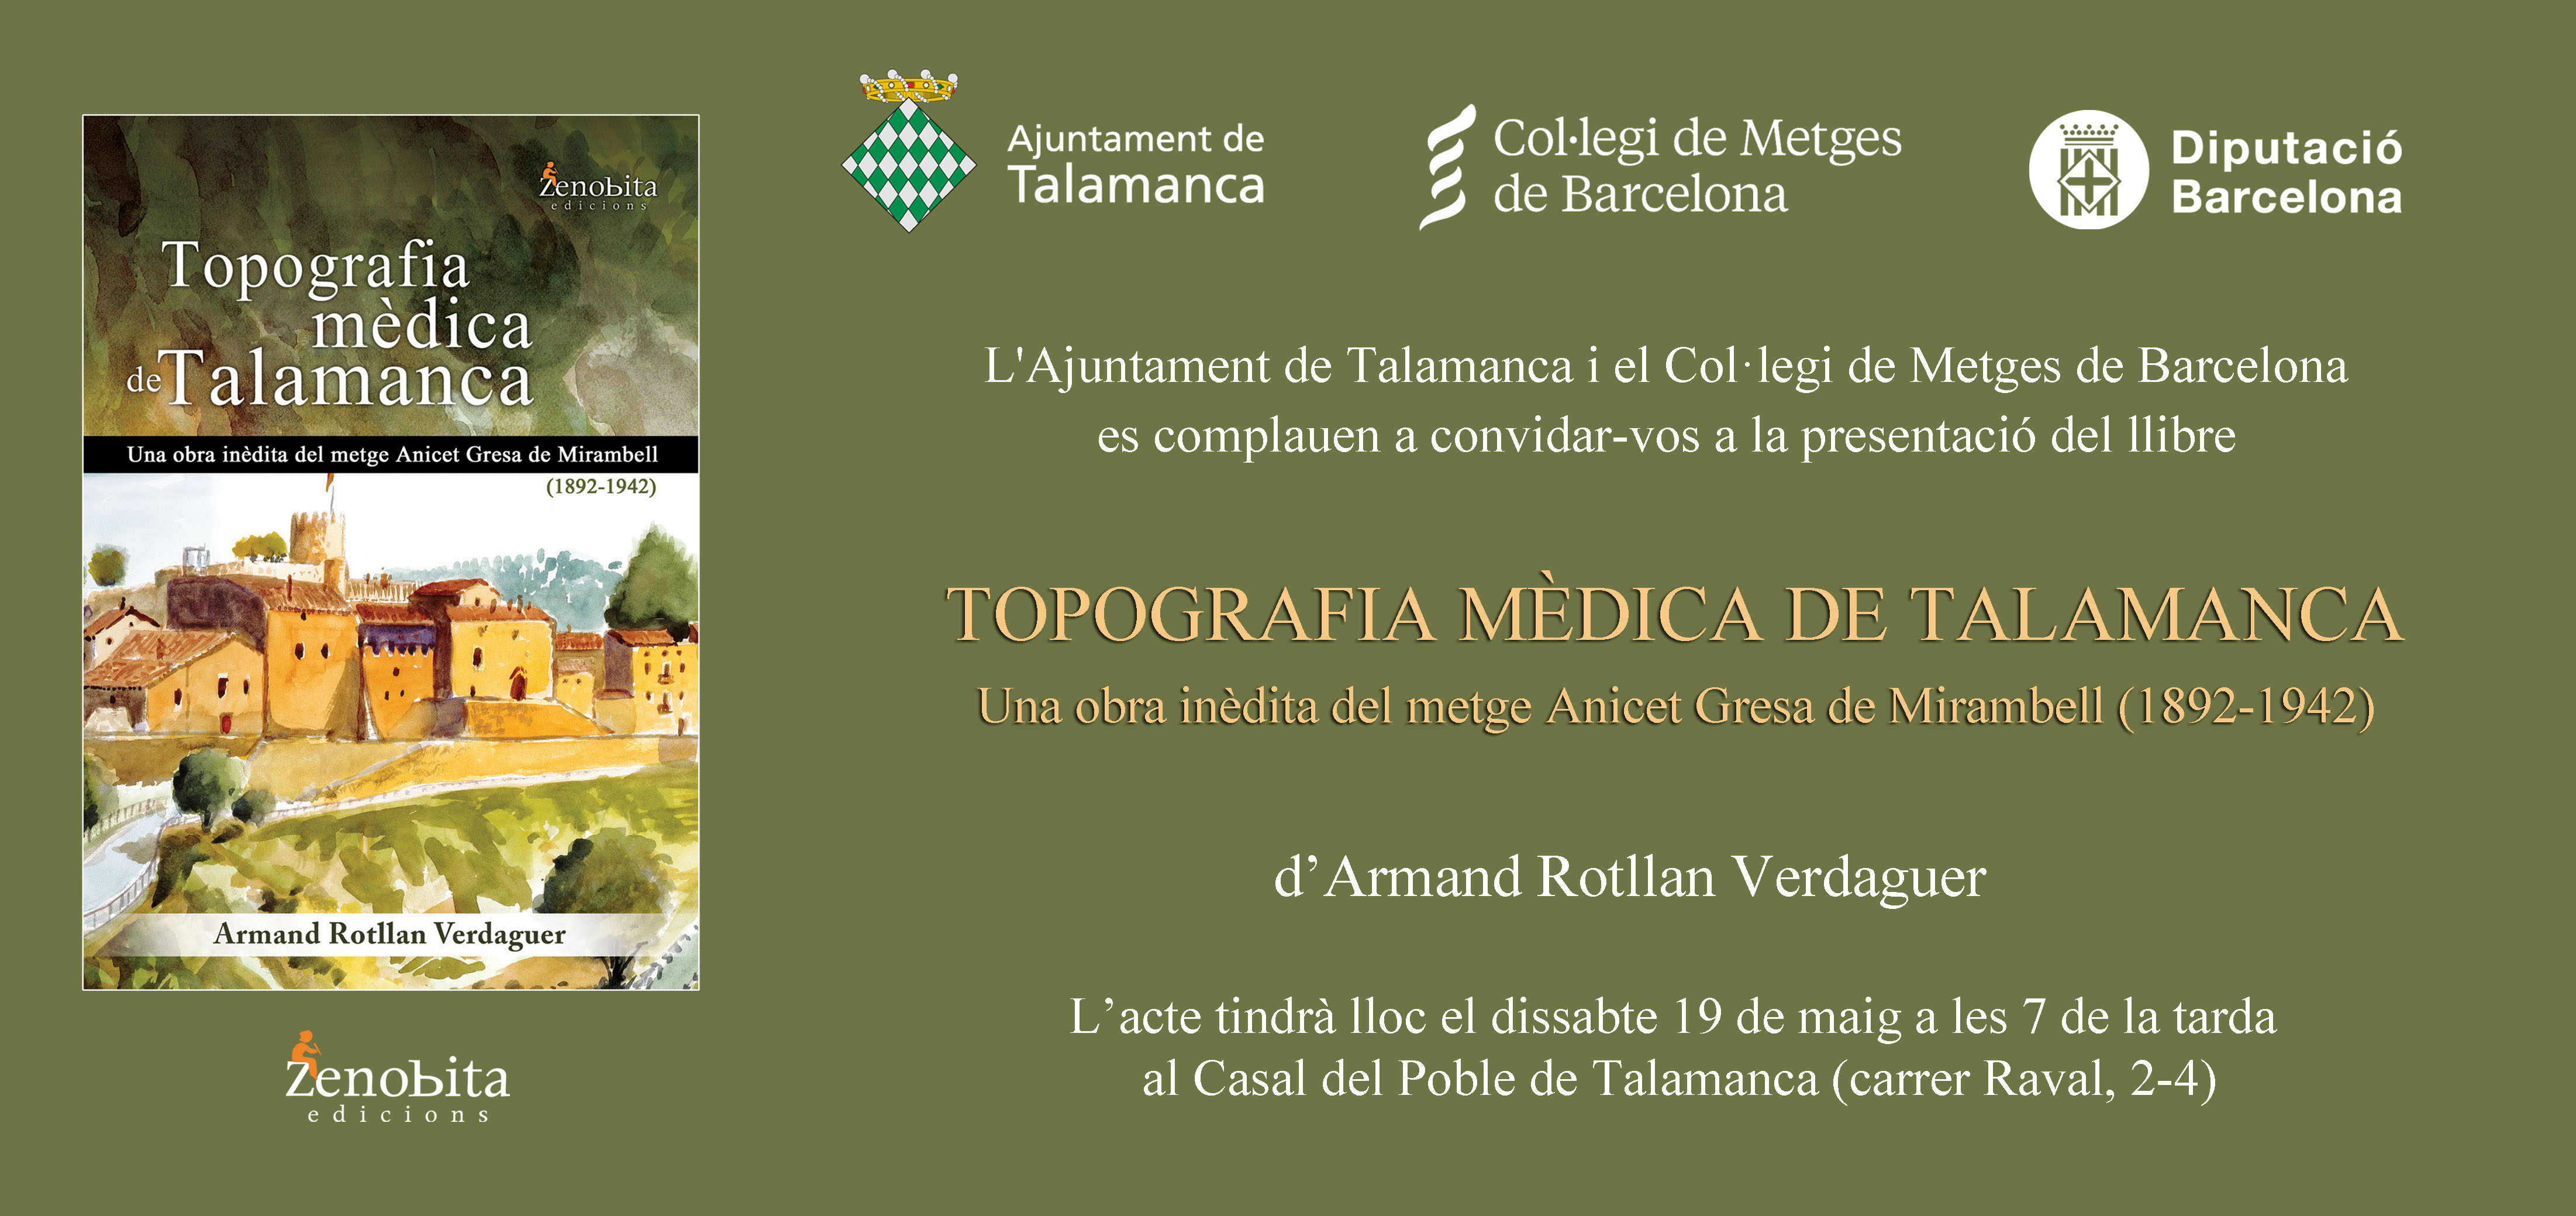 Presentació del llibre: “Topografia mèdica de Talamanca”